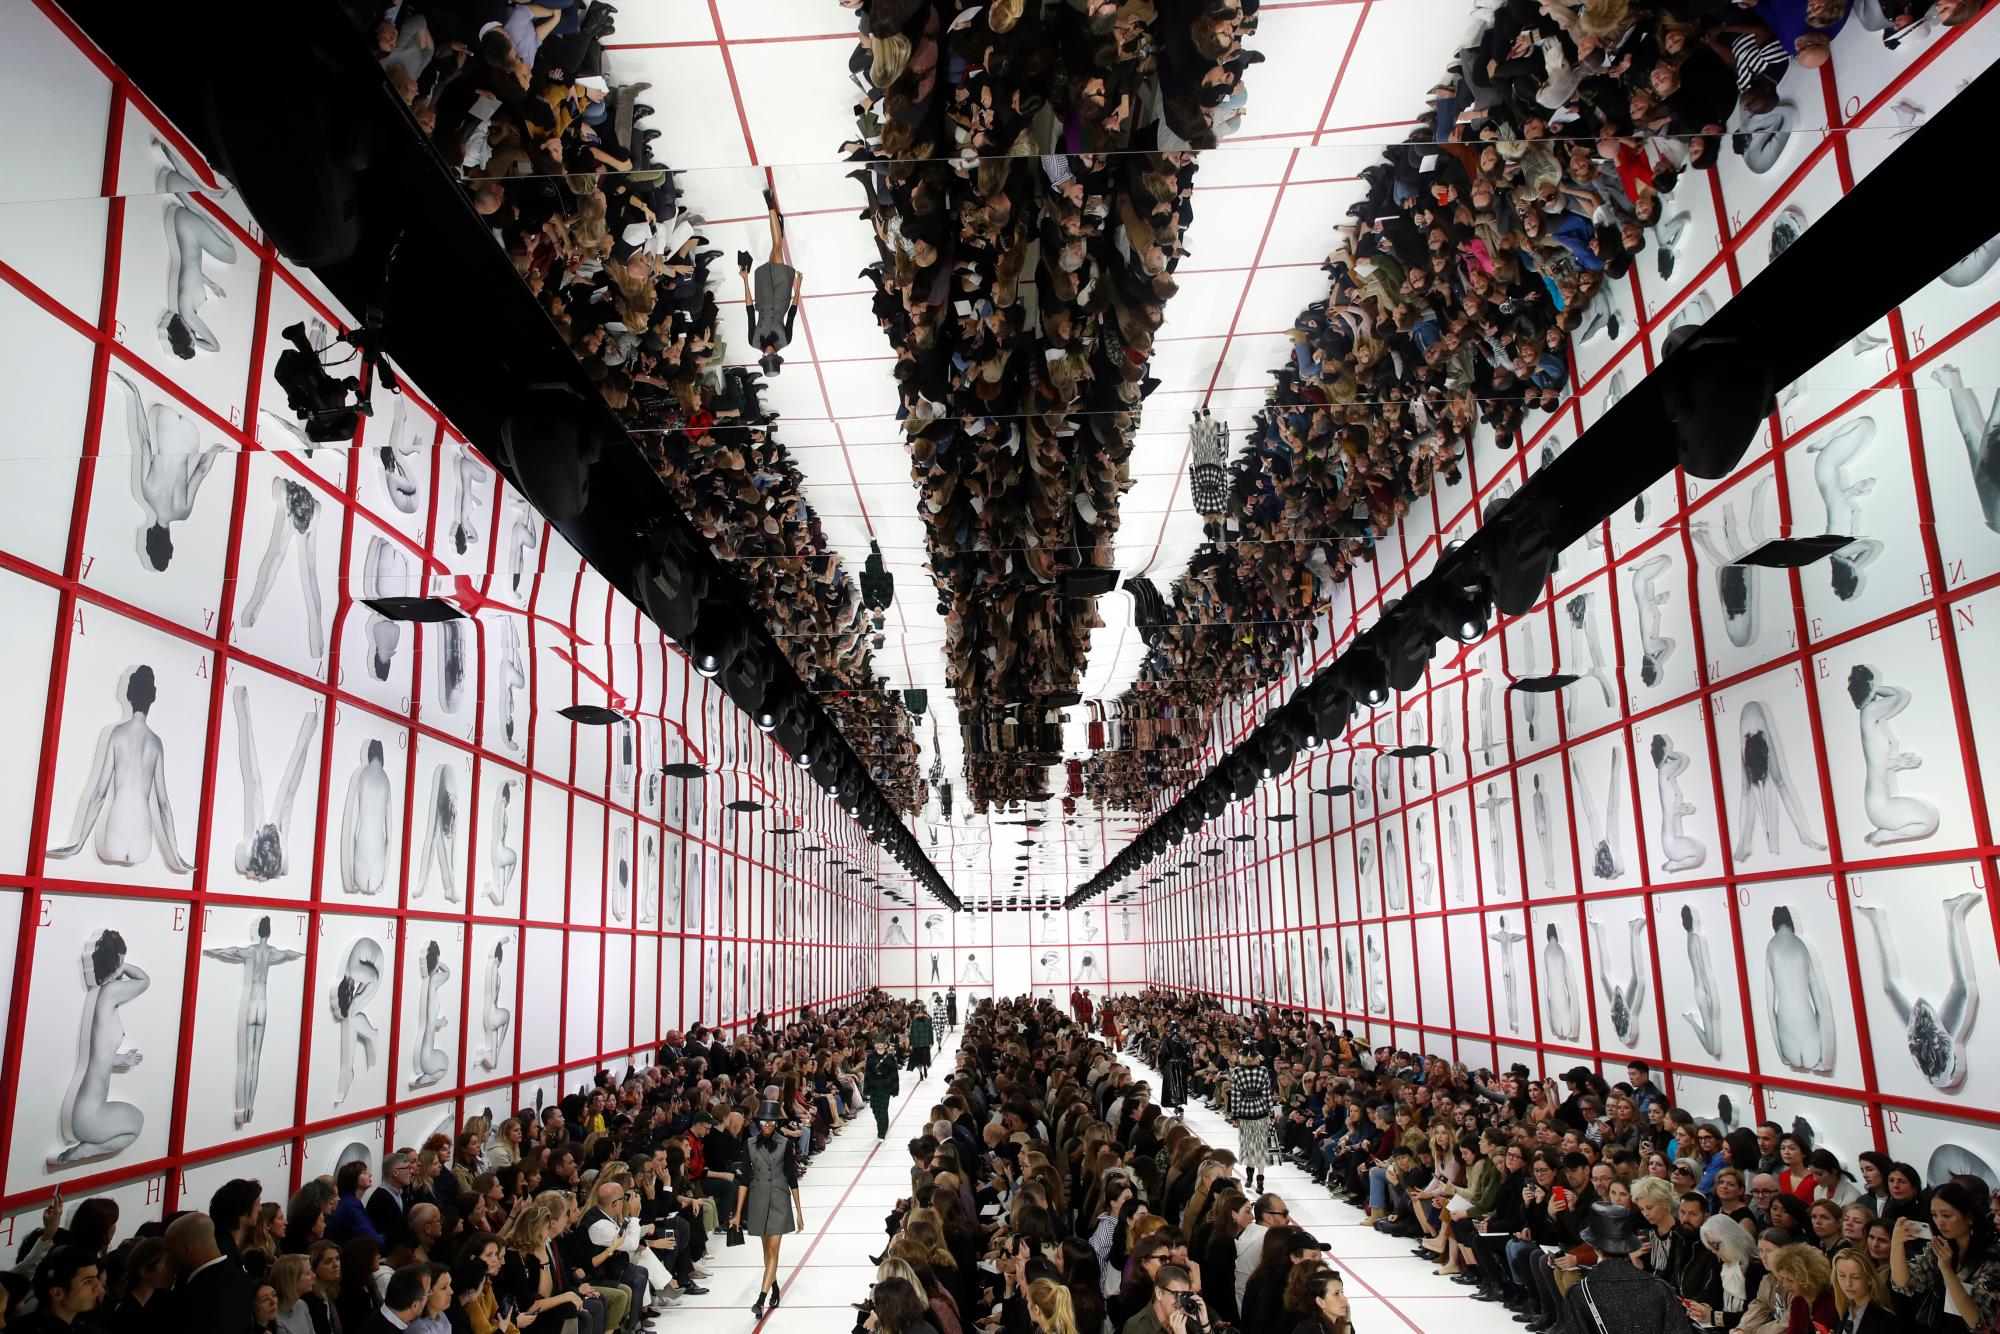 Las modelos caminan por la pasarela durante el desfile de moda de la colección Dior lista para usar Otoño-Invierno 2019-2020 en París el 26 de febrero de 2019.